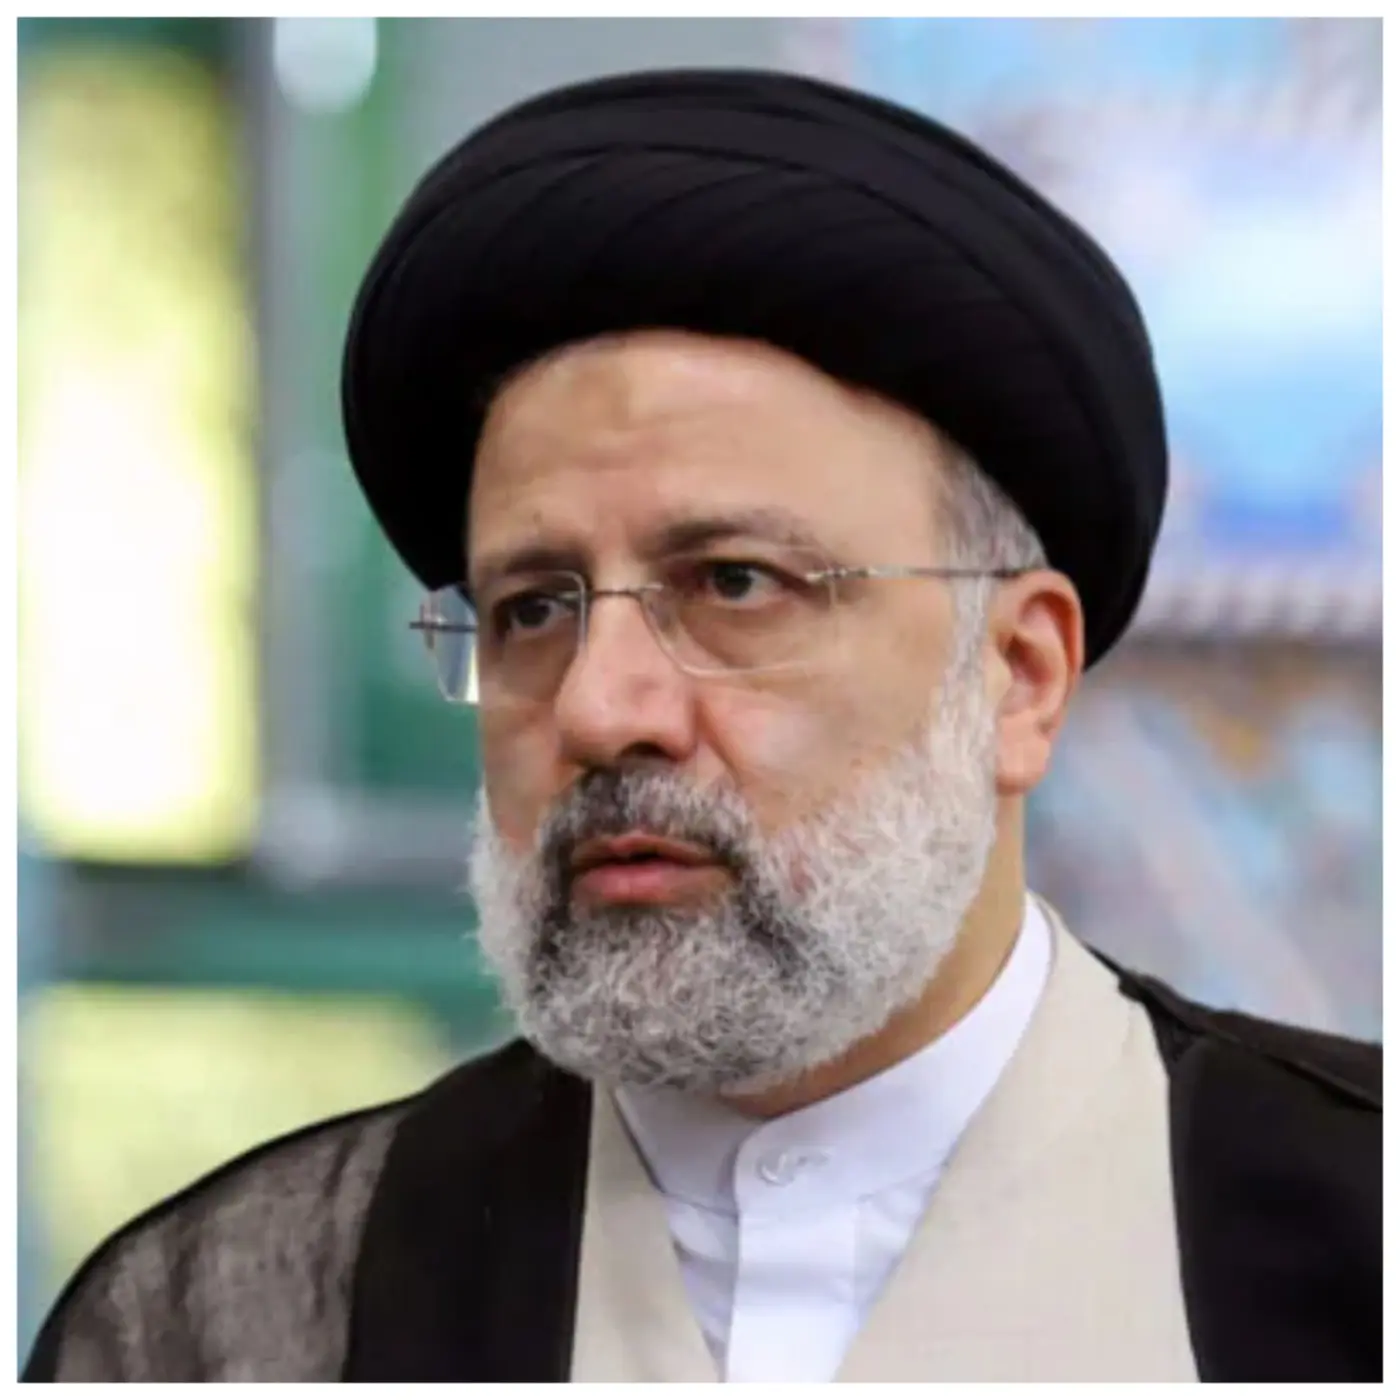 We’ll strike fiercely against retaliatory attack – Iran President warns Israel